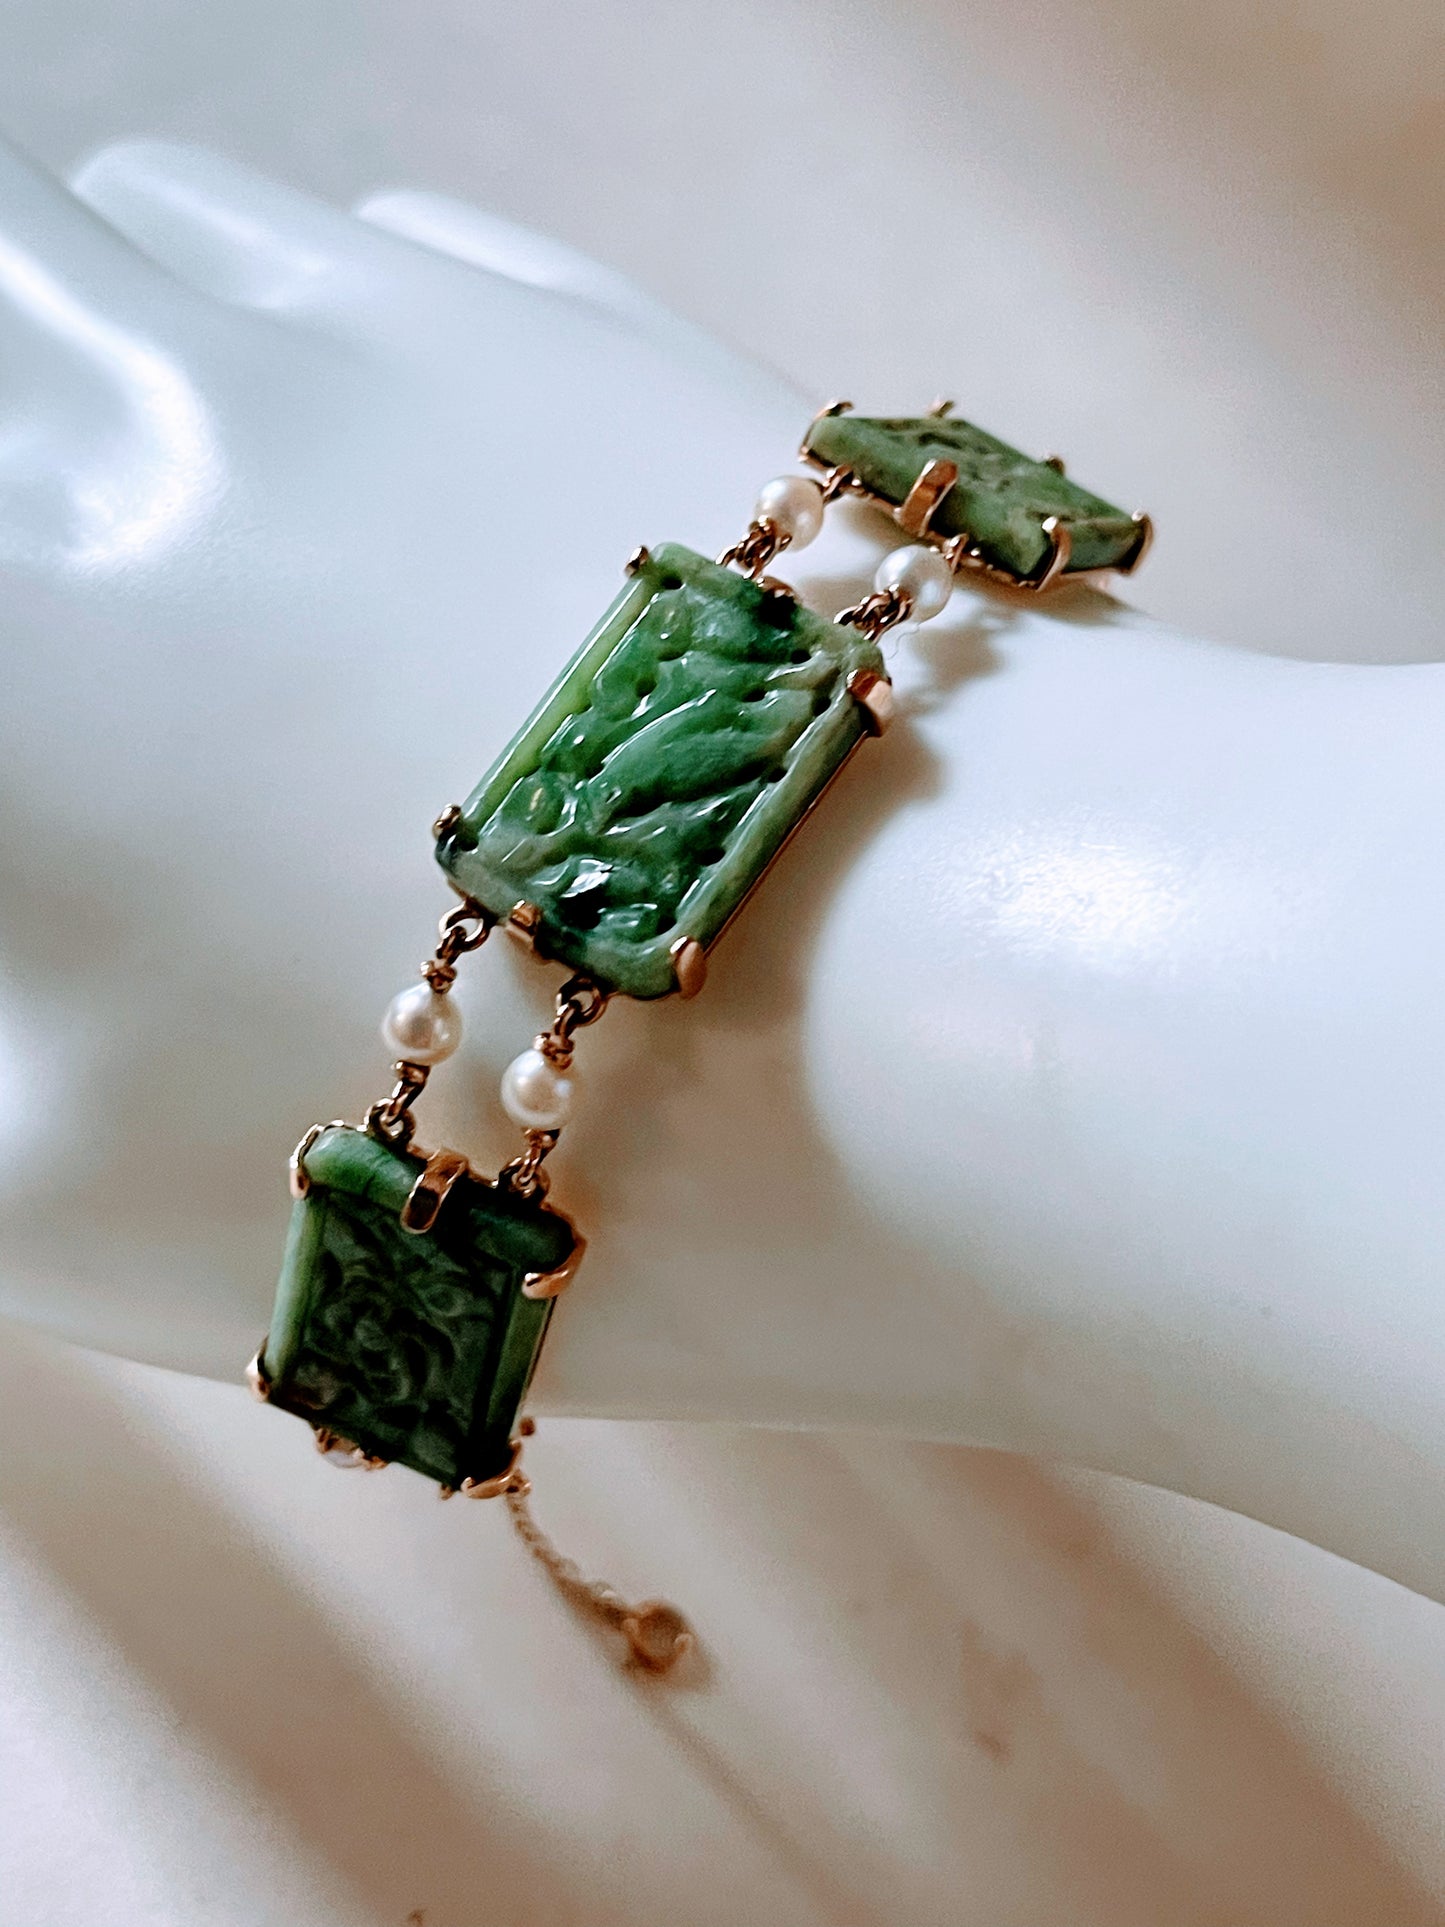 A vintage jade bracelet in 14kt setting